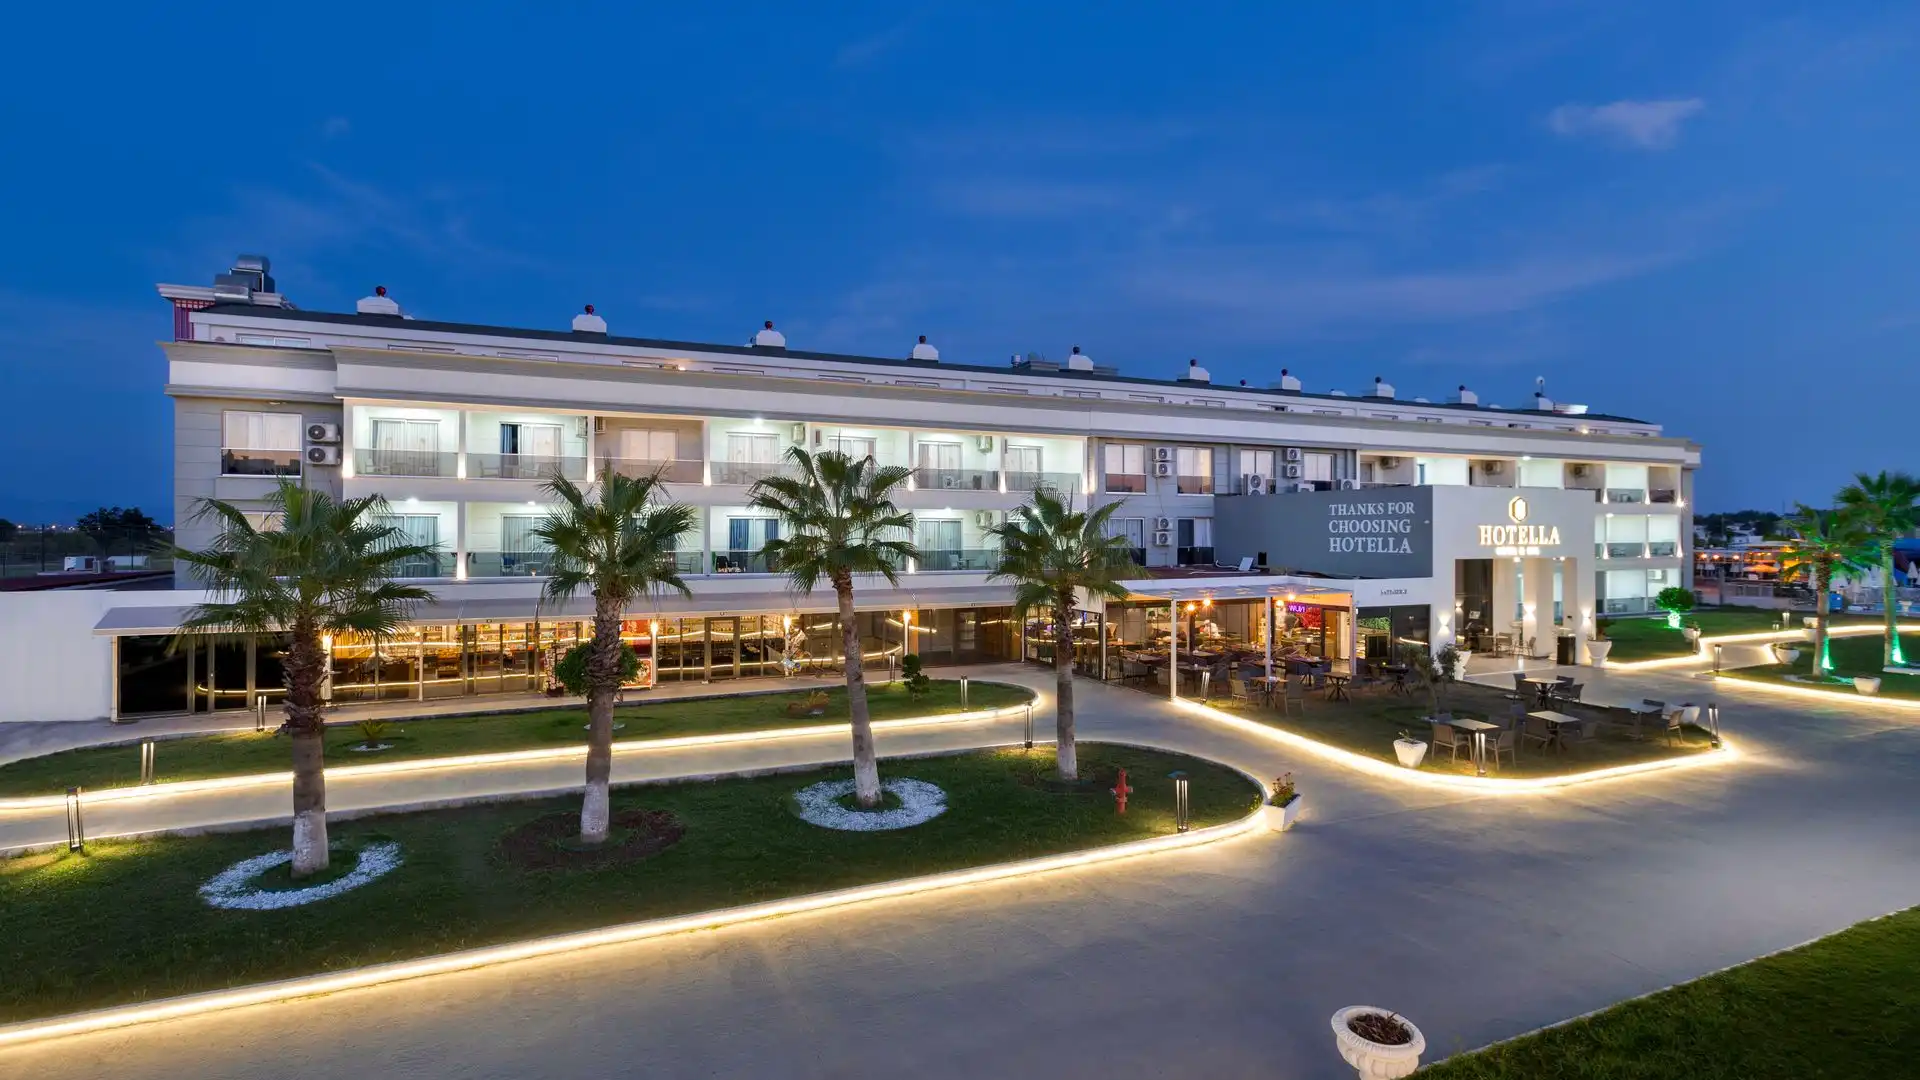 Hotella Resort & Spa | Tesis